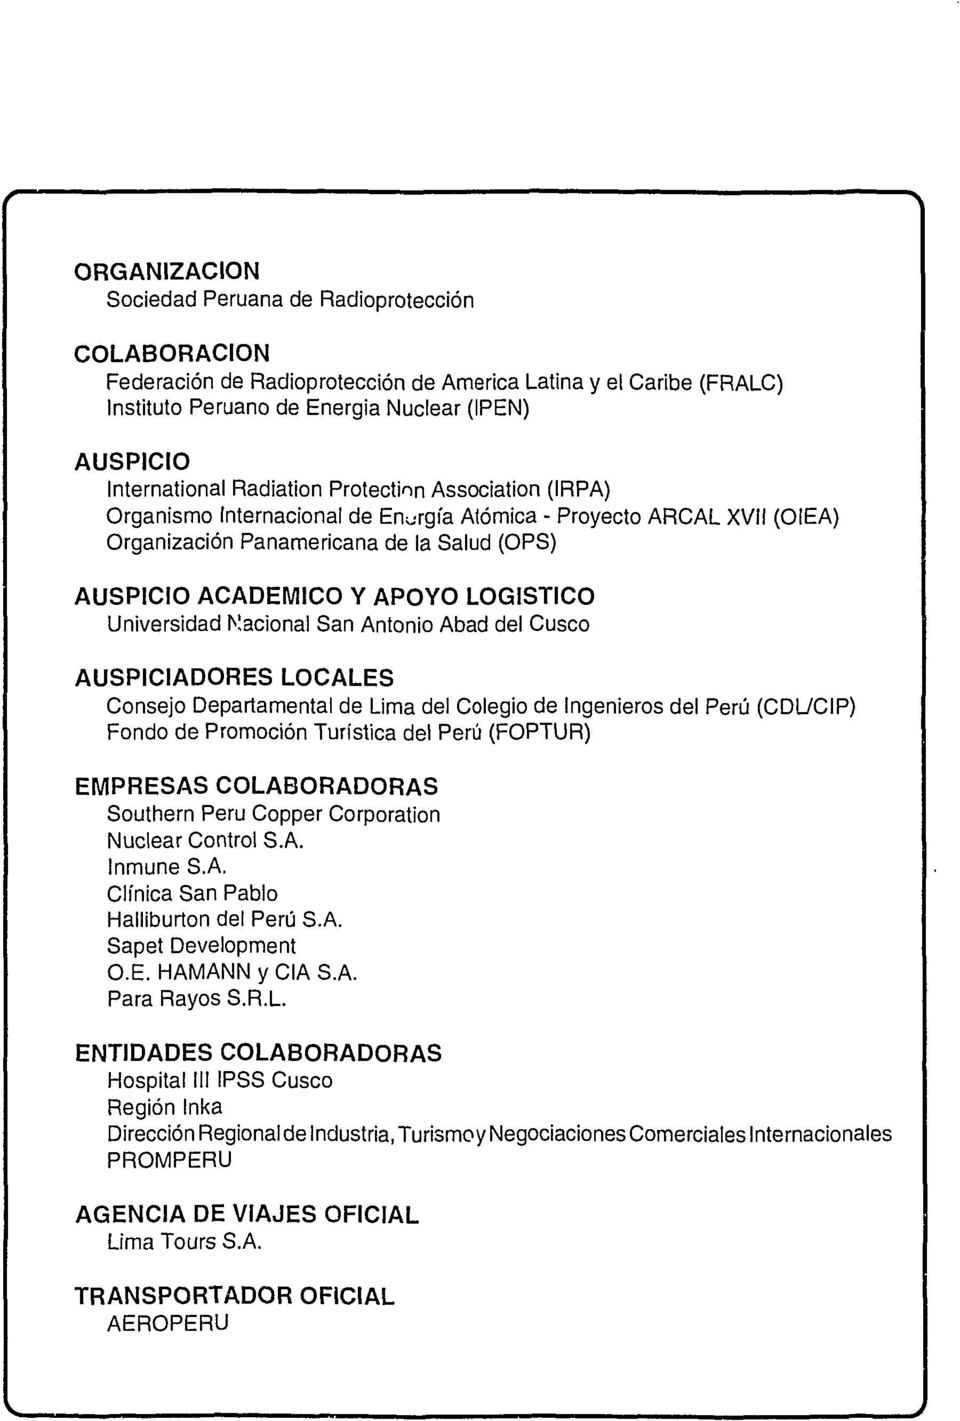 Universidad Nacional San Antonio Abad del Cusco AUSPICIADORES LOCALES Consejo Departamental de Lima del Colegio de Ingenieros del Perú (CDL/CIP) Fondo de Promoción Turística del Perú (FOPTUR)